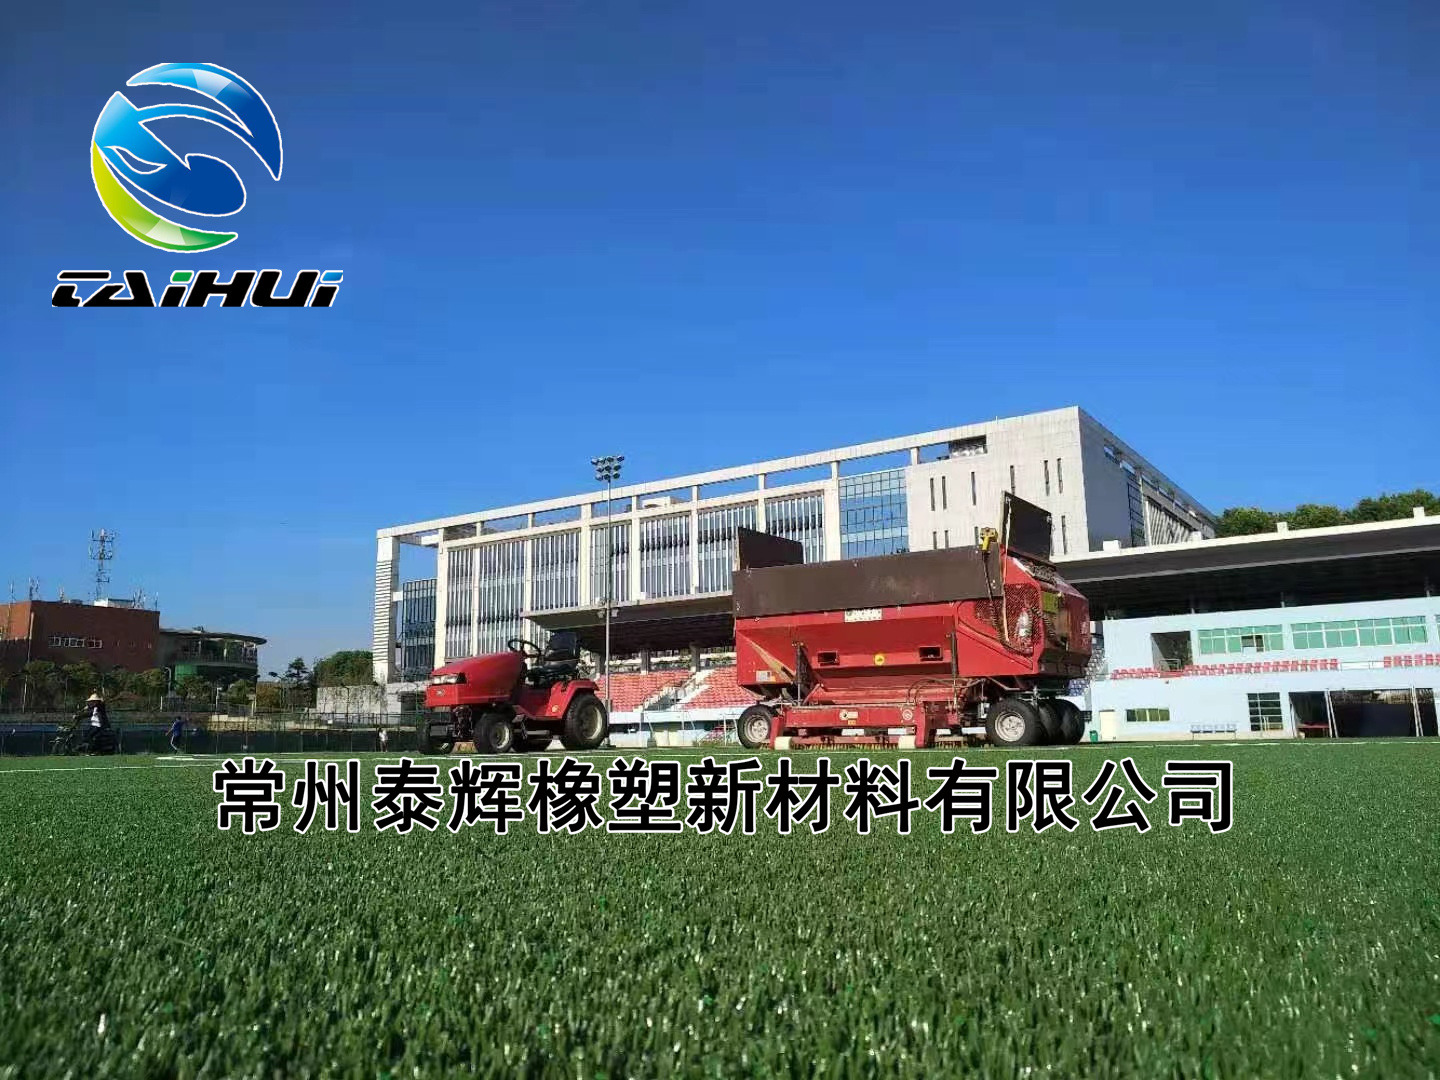 华中农业大学 (FIFA)